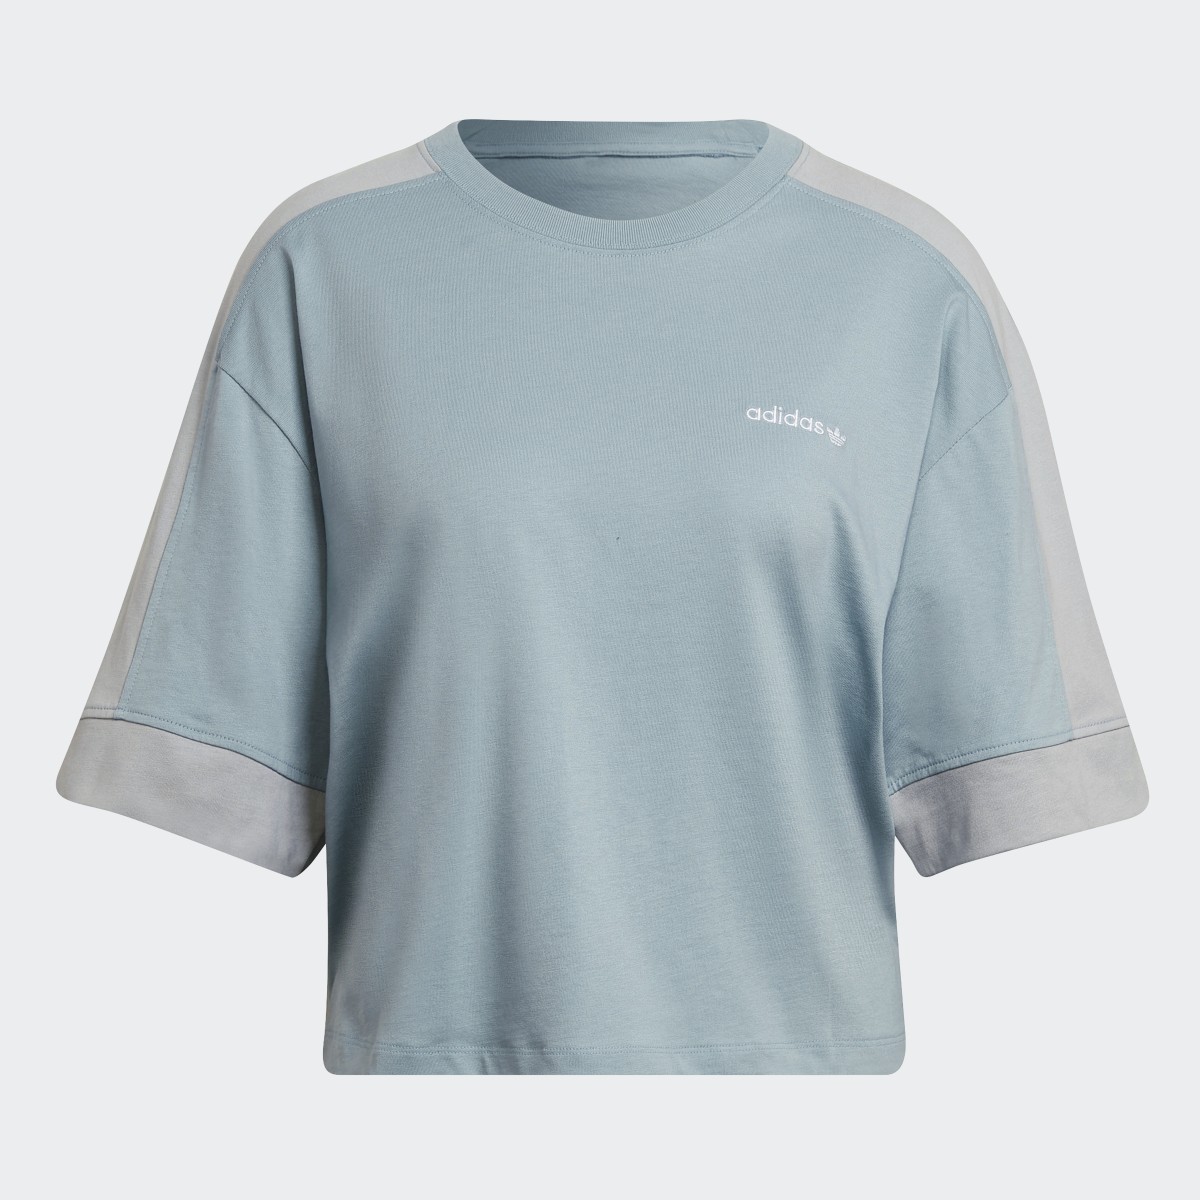 Adidas Camiseta Crop. 7